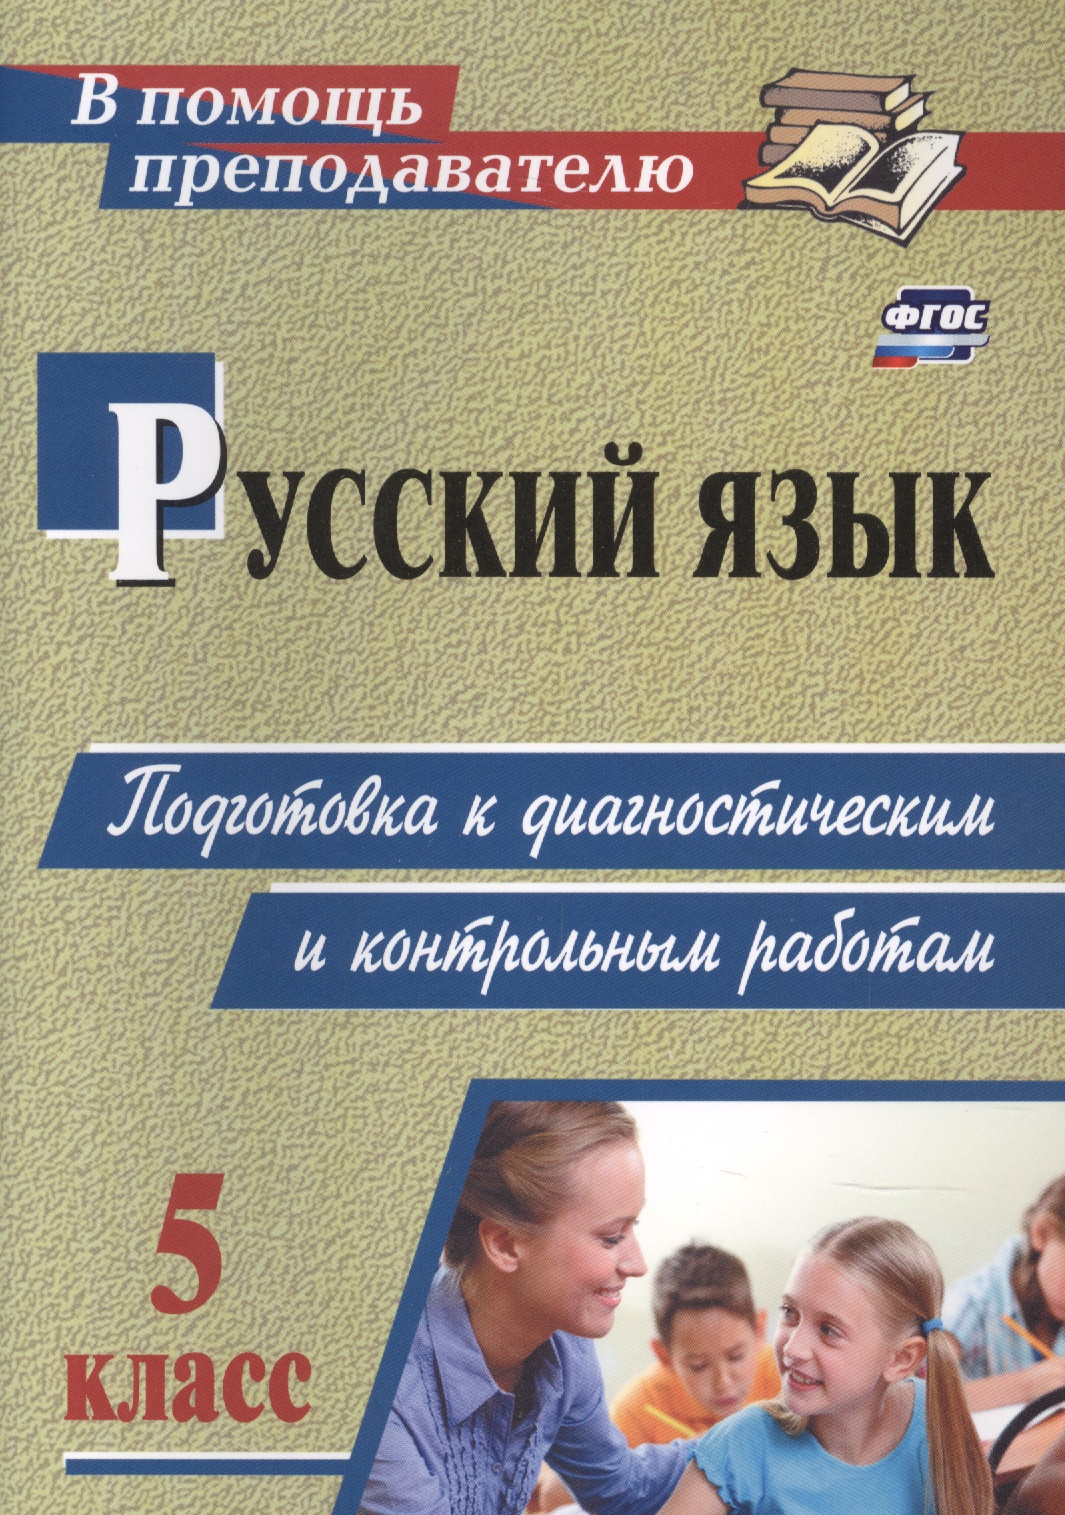 русский язык 5 класс подготовка к диагностическим и контрольным работам Русский язык. 5 класс: подготовка к диагностическим и контрольным работам.